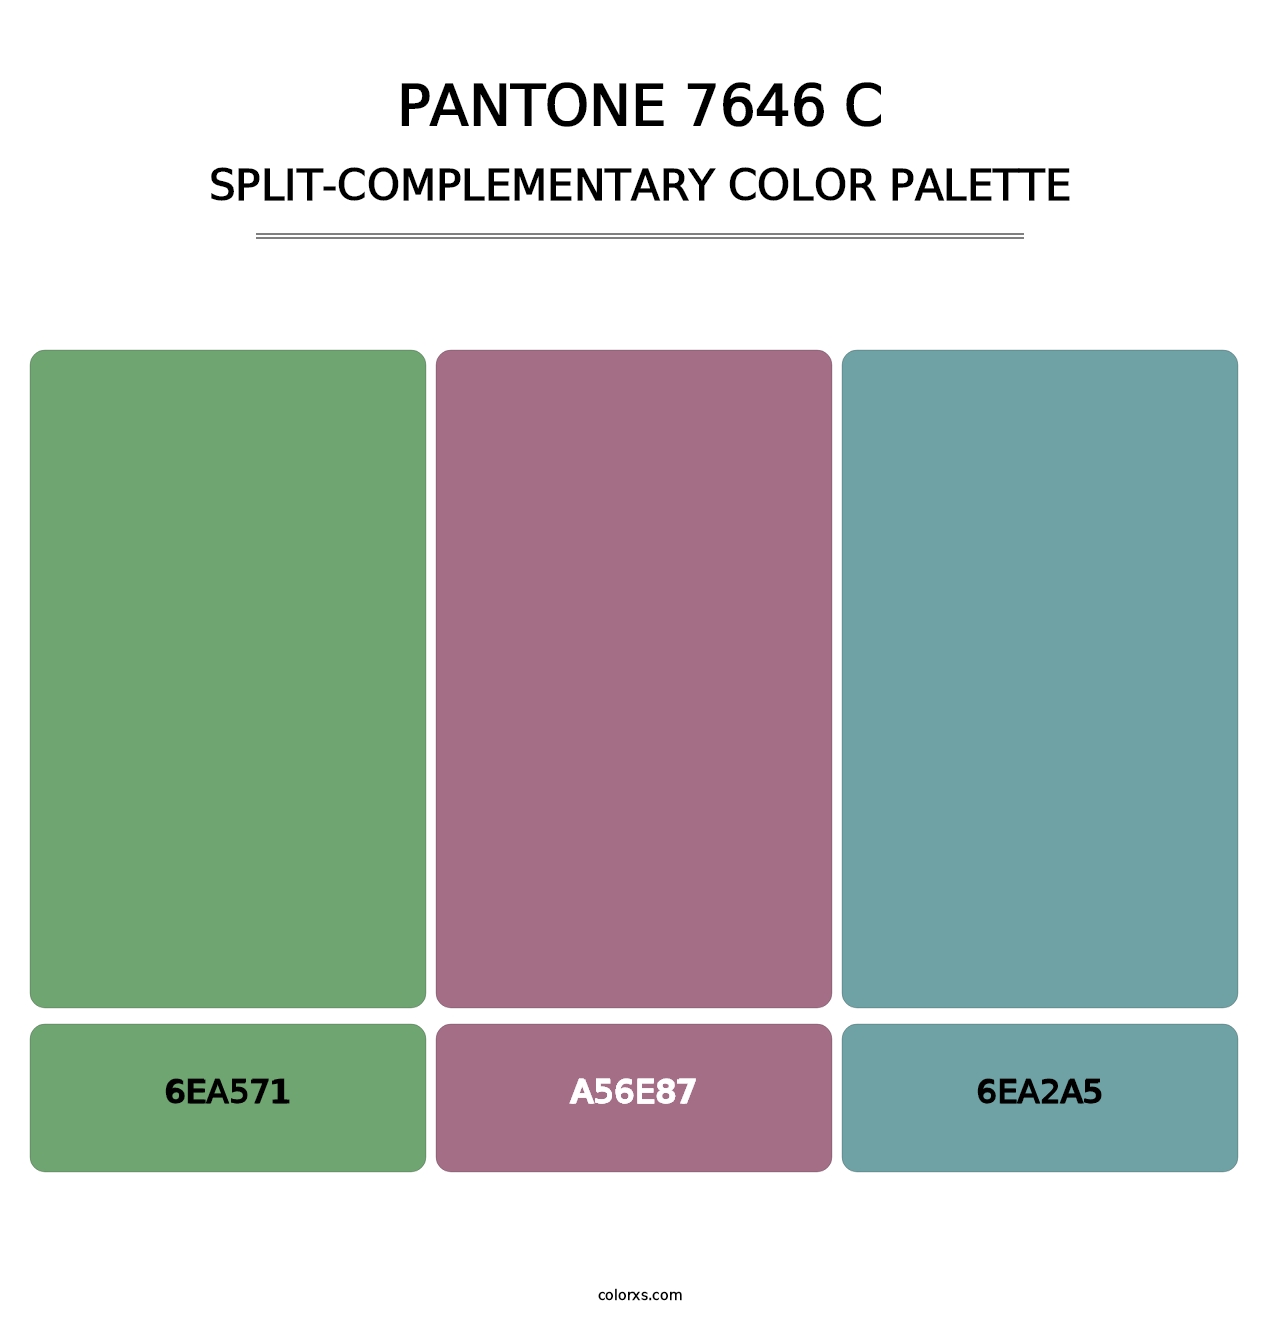 PANTONE 7646 C - Split-Complementary Color Palette